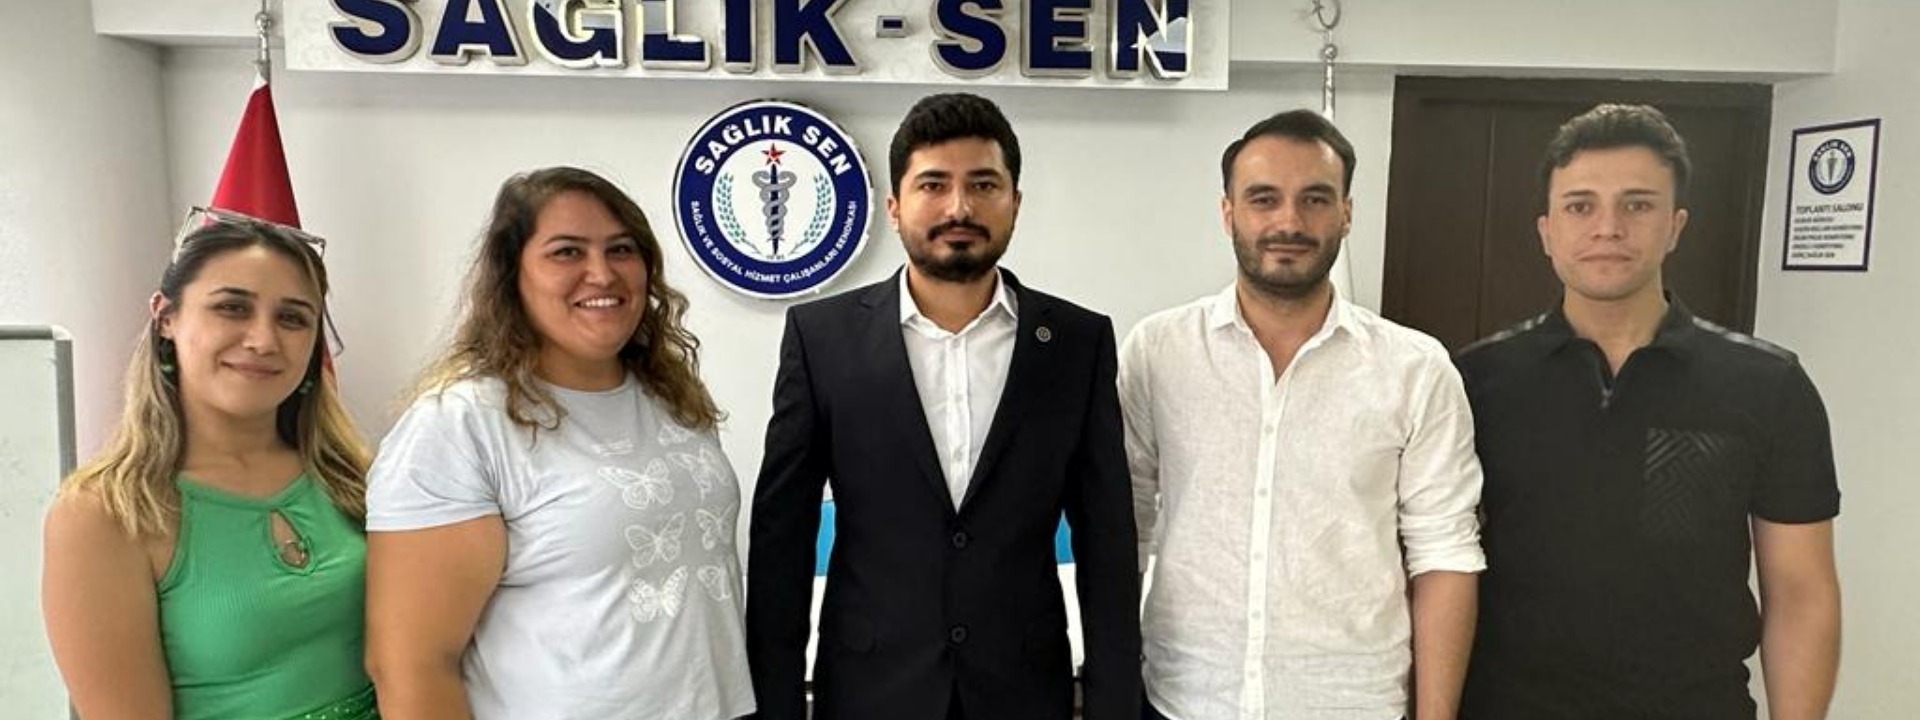 Sağlık-Sen İzmir 1 No’lu Şube Gençlik Kolları Faaliyete Başladı.